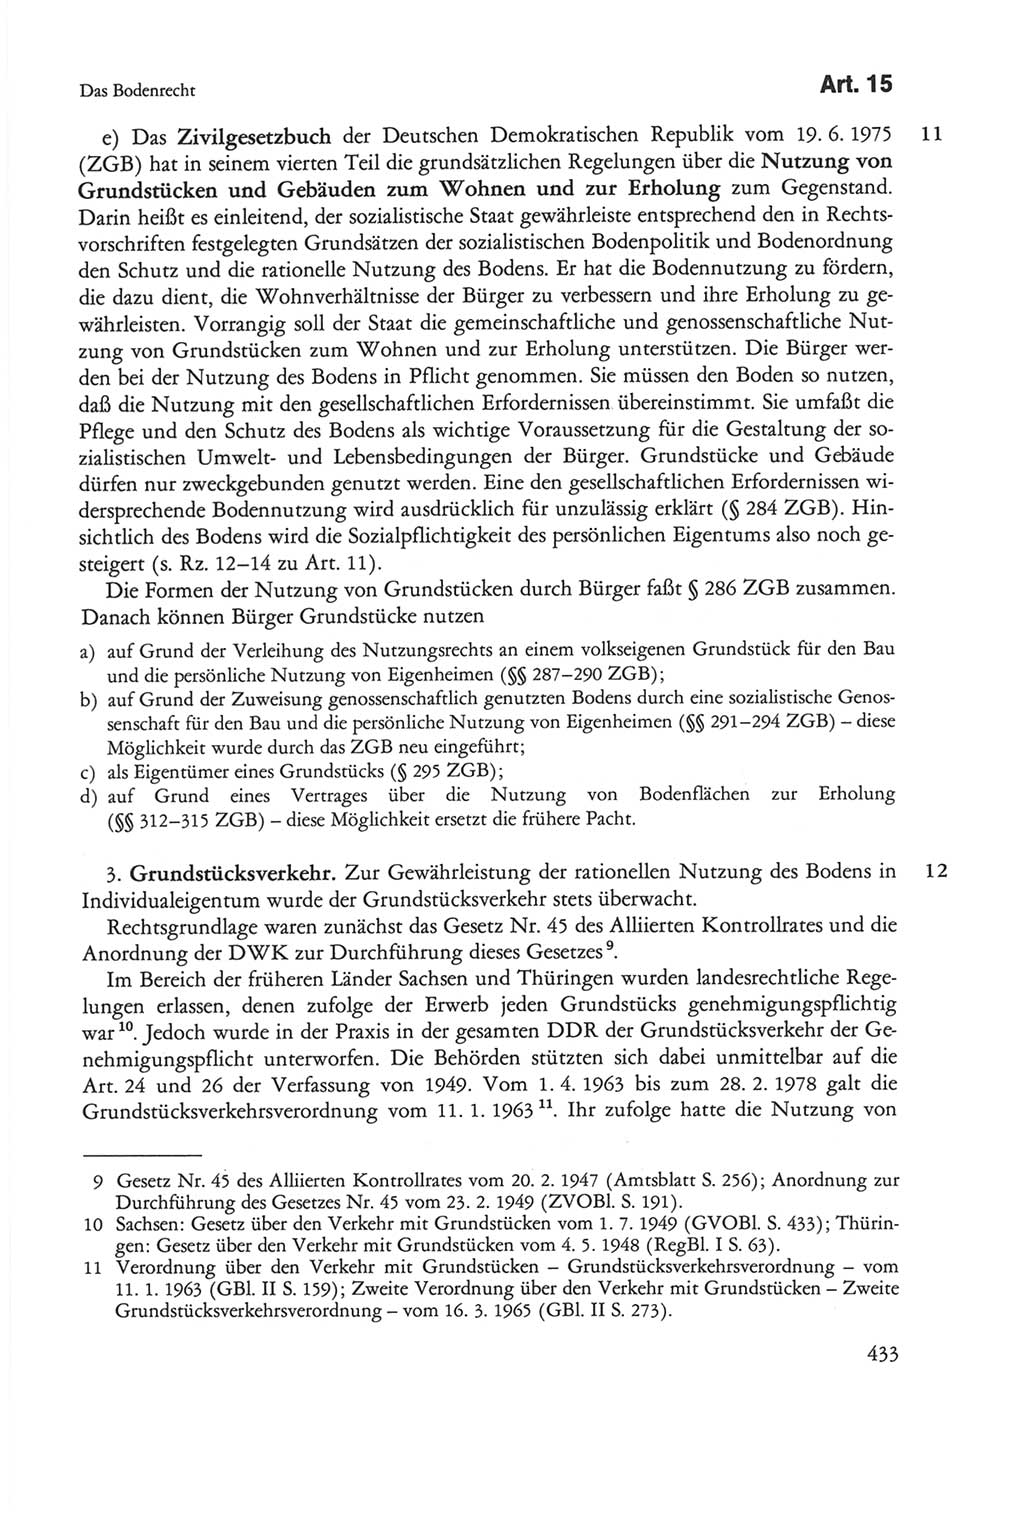 Die sozialistische Verfassung der Deutschen Demokratischen Republik (DDR), Kommentar 1982, Seite 433 (Soz. Verf. DDR Komm. 1982, S. 433)